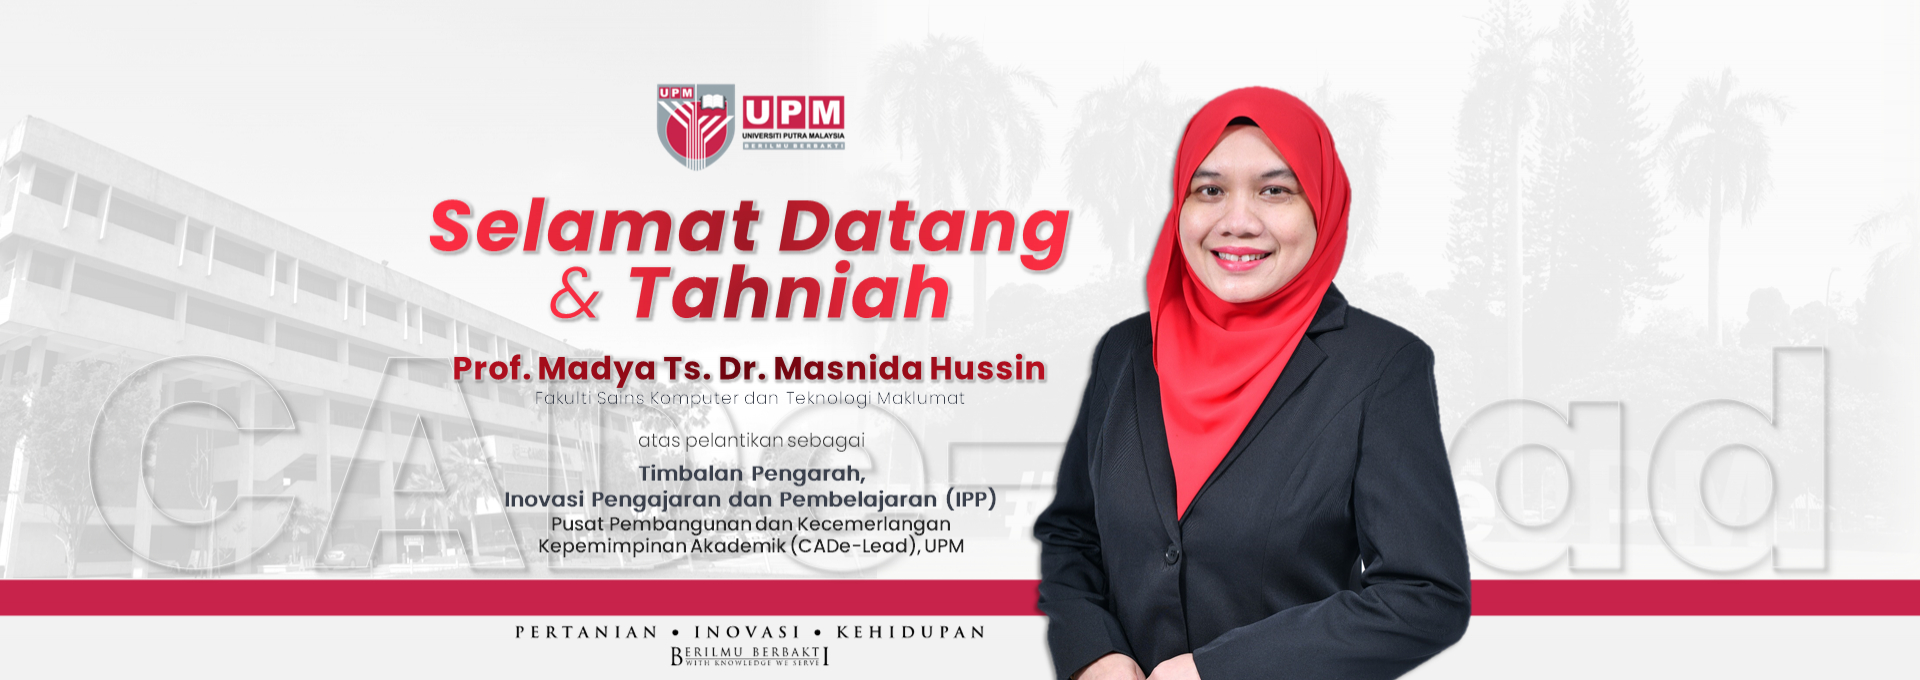 Congratulations to Assoc. Prof. Ts. Dr. Masnida Hussin